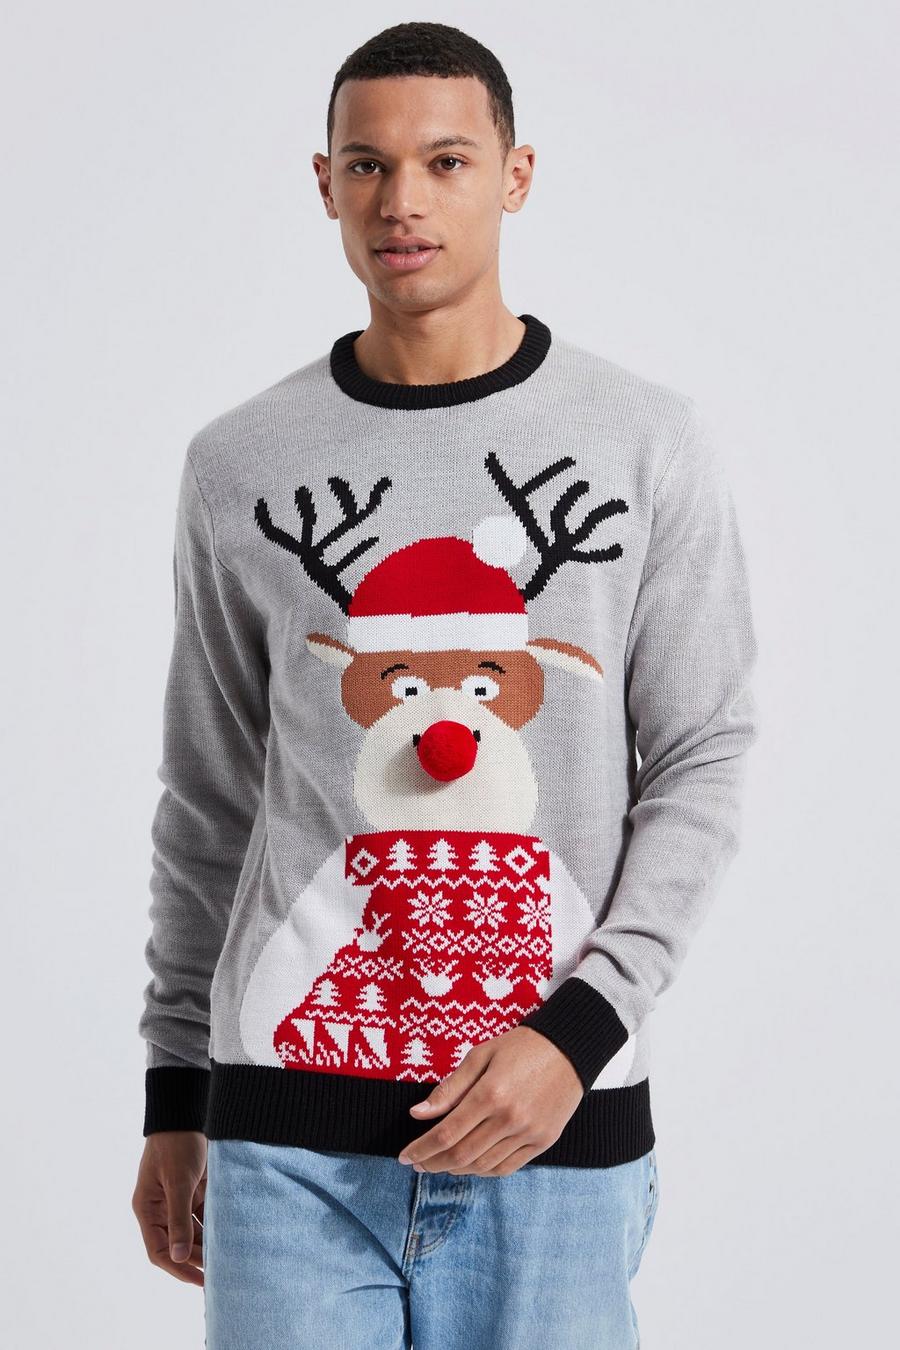 Jersey Tall navideño con estampado de reno con gorro de Papá Noel, Grey marl gris